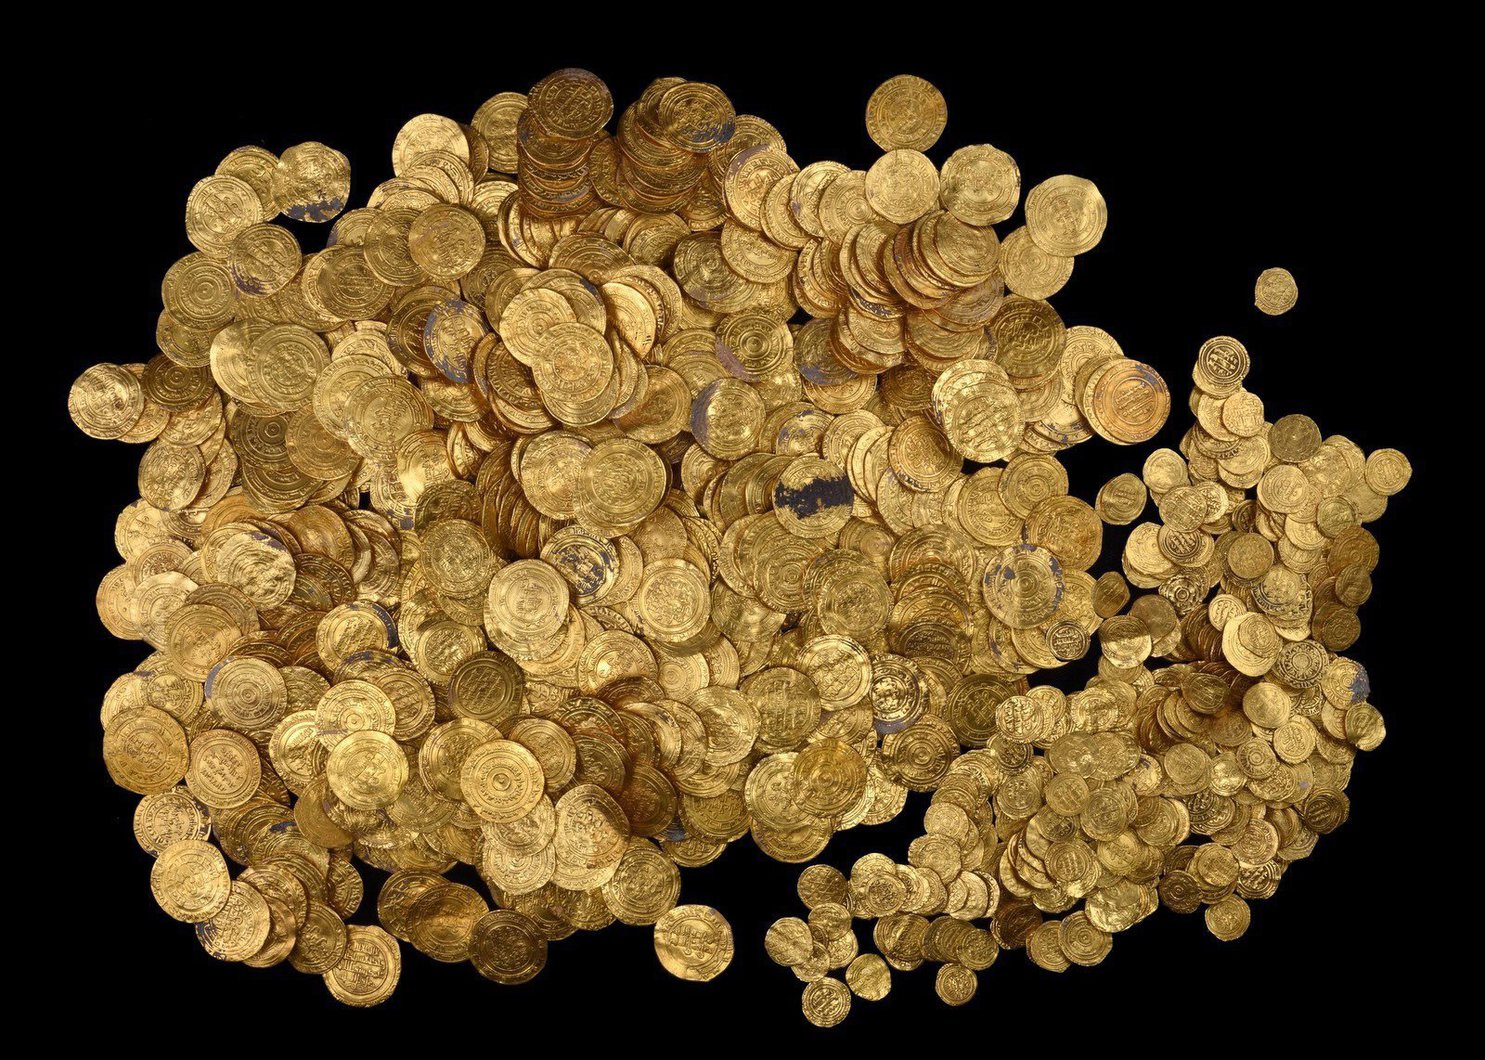 Enorme goudschat gevonden in Israël (IAA)